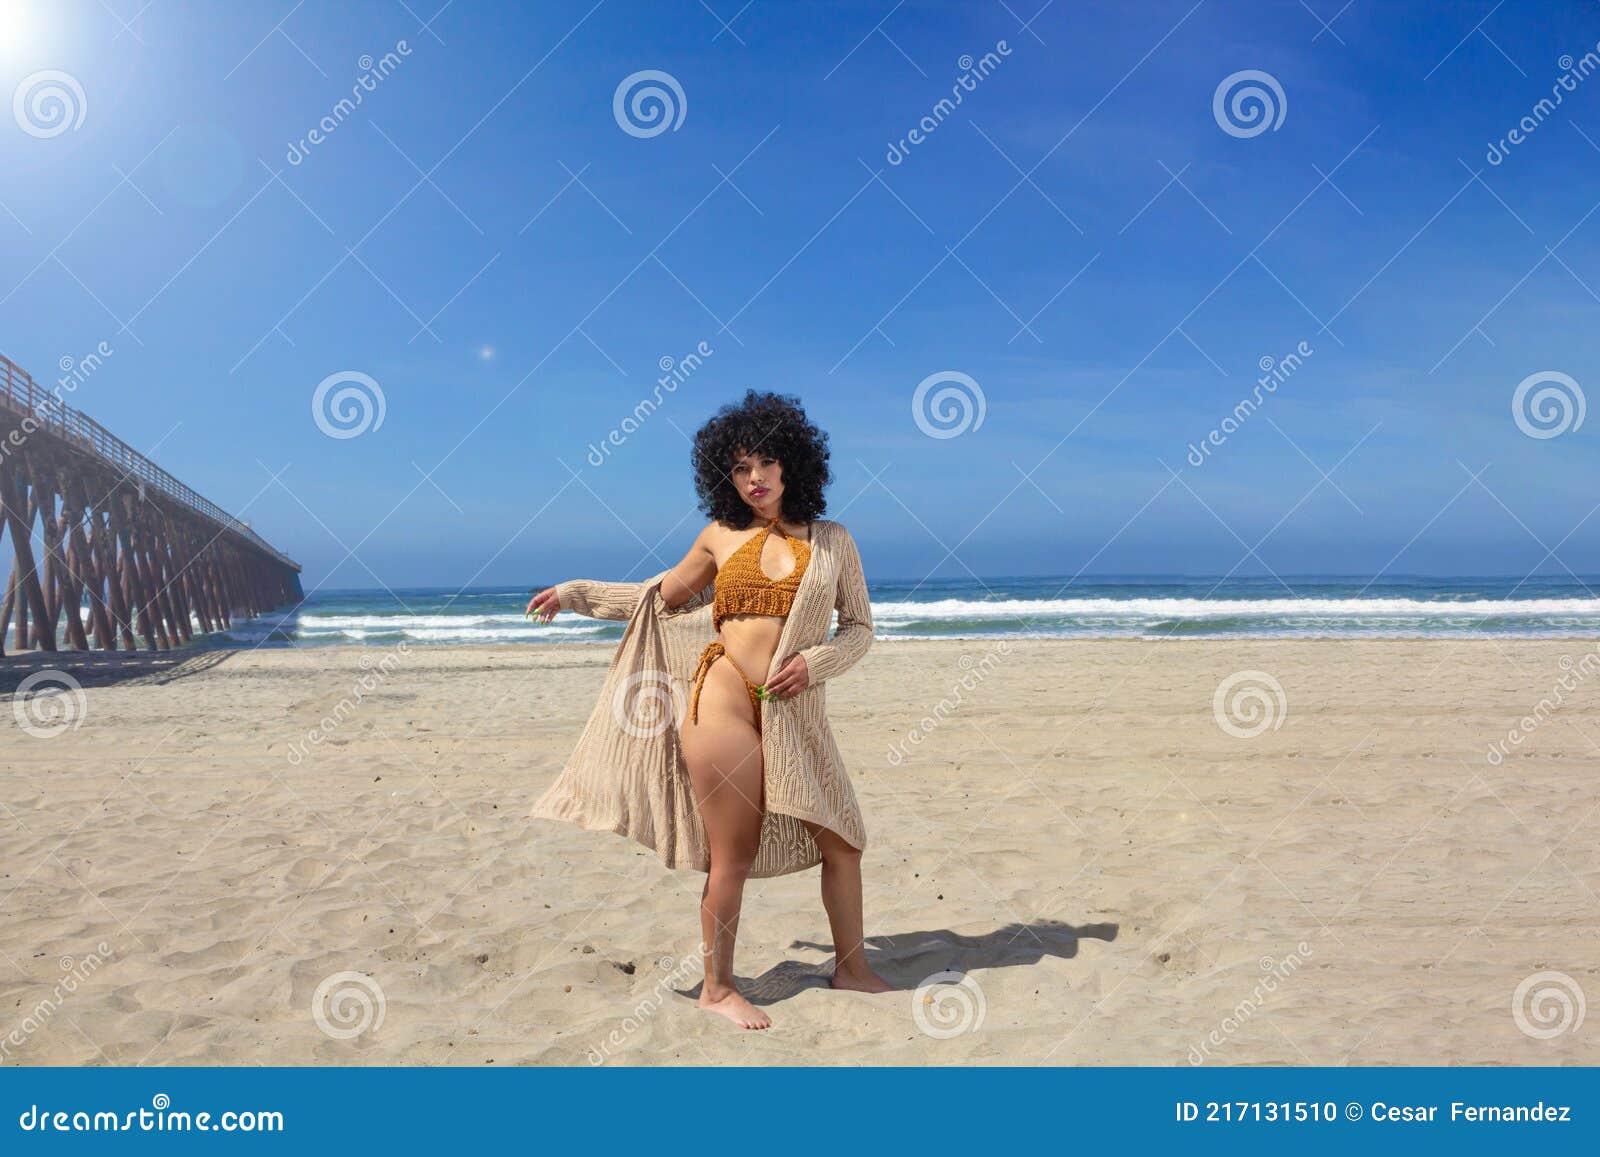 hot mexican girl on beach